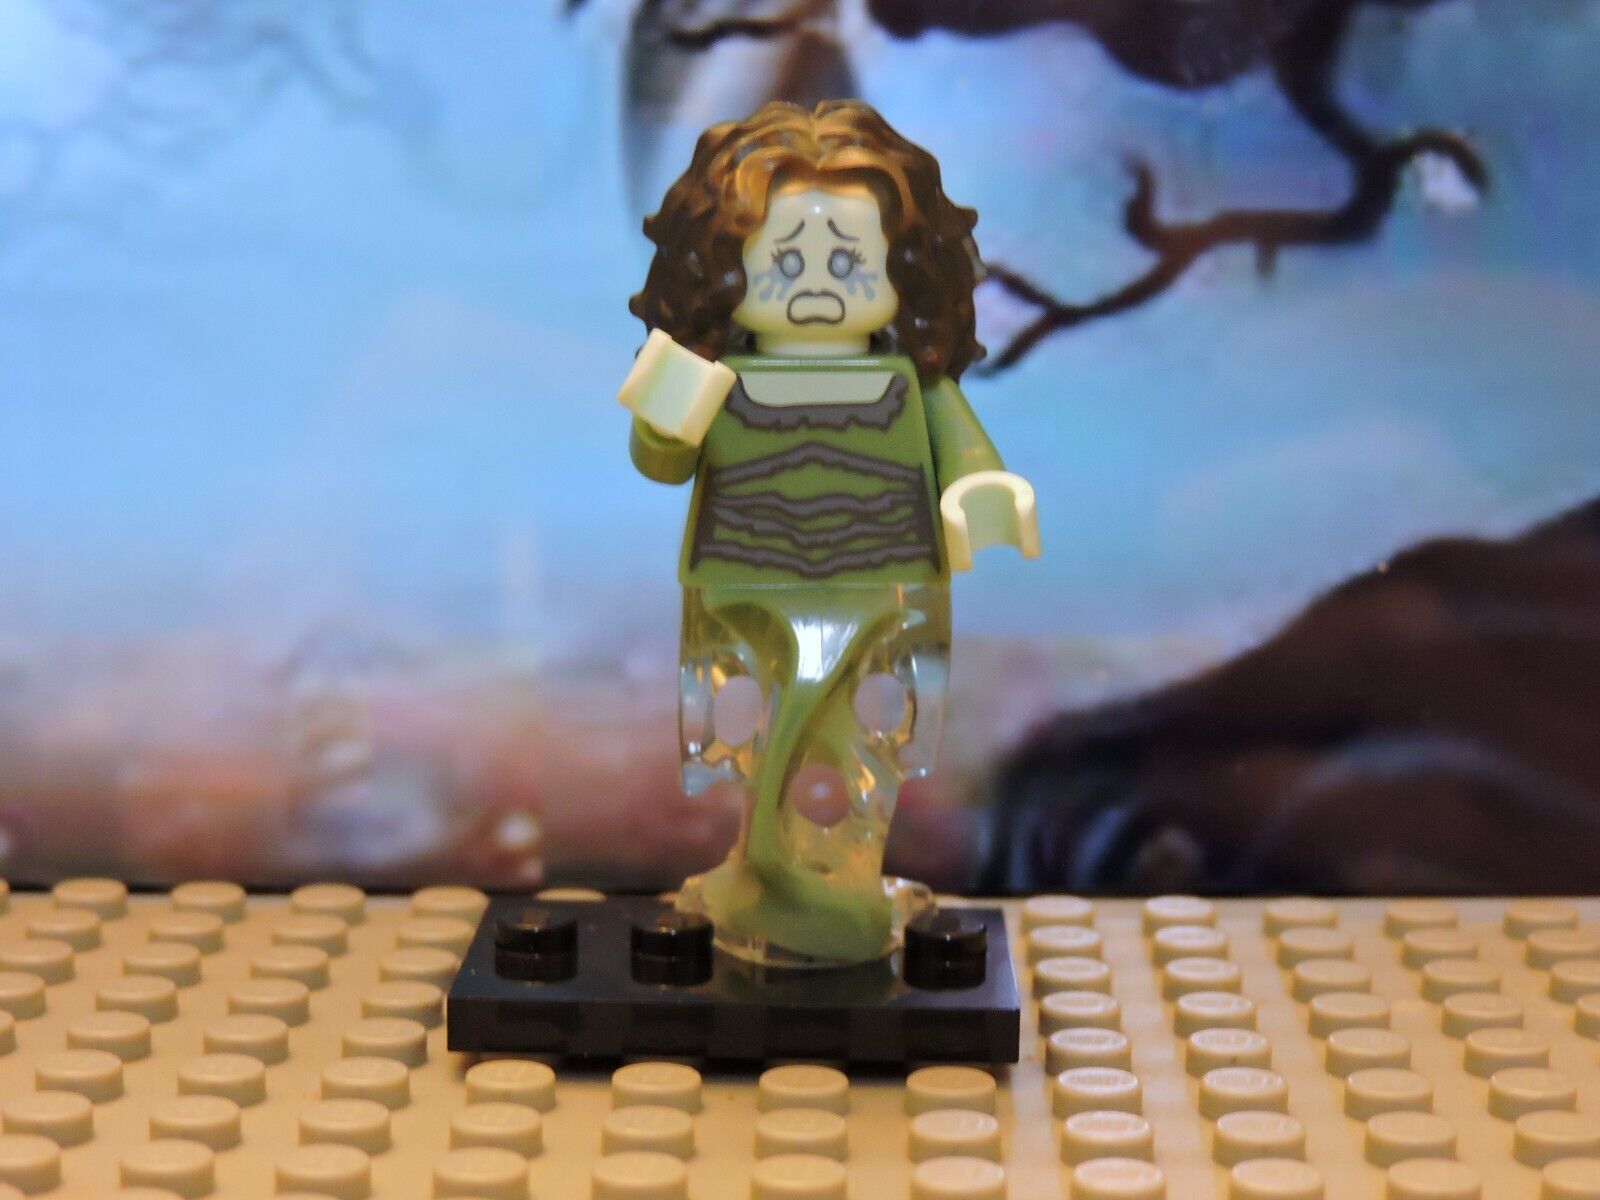 Series 14 Lego Banshee Minifigure